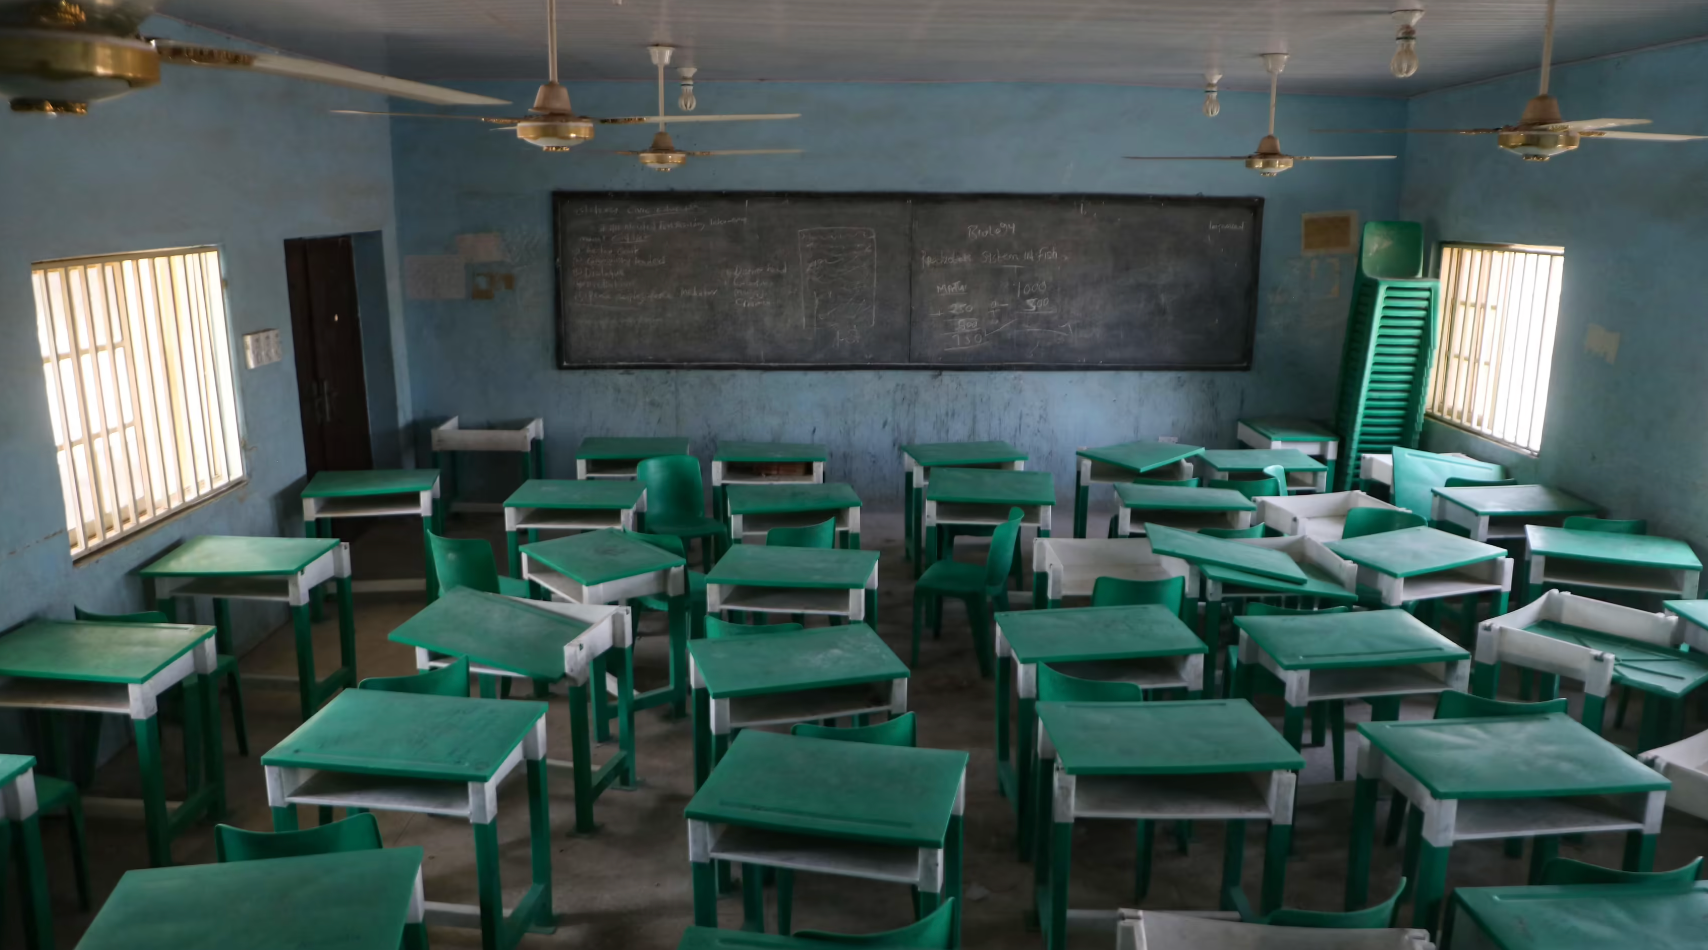 Plus de 280 élèves enlevés par des hommes armés, selon un enseignant